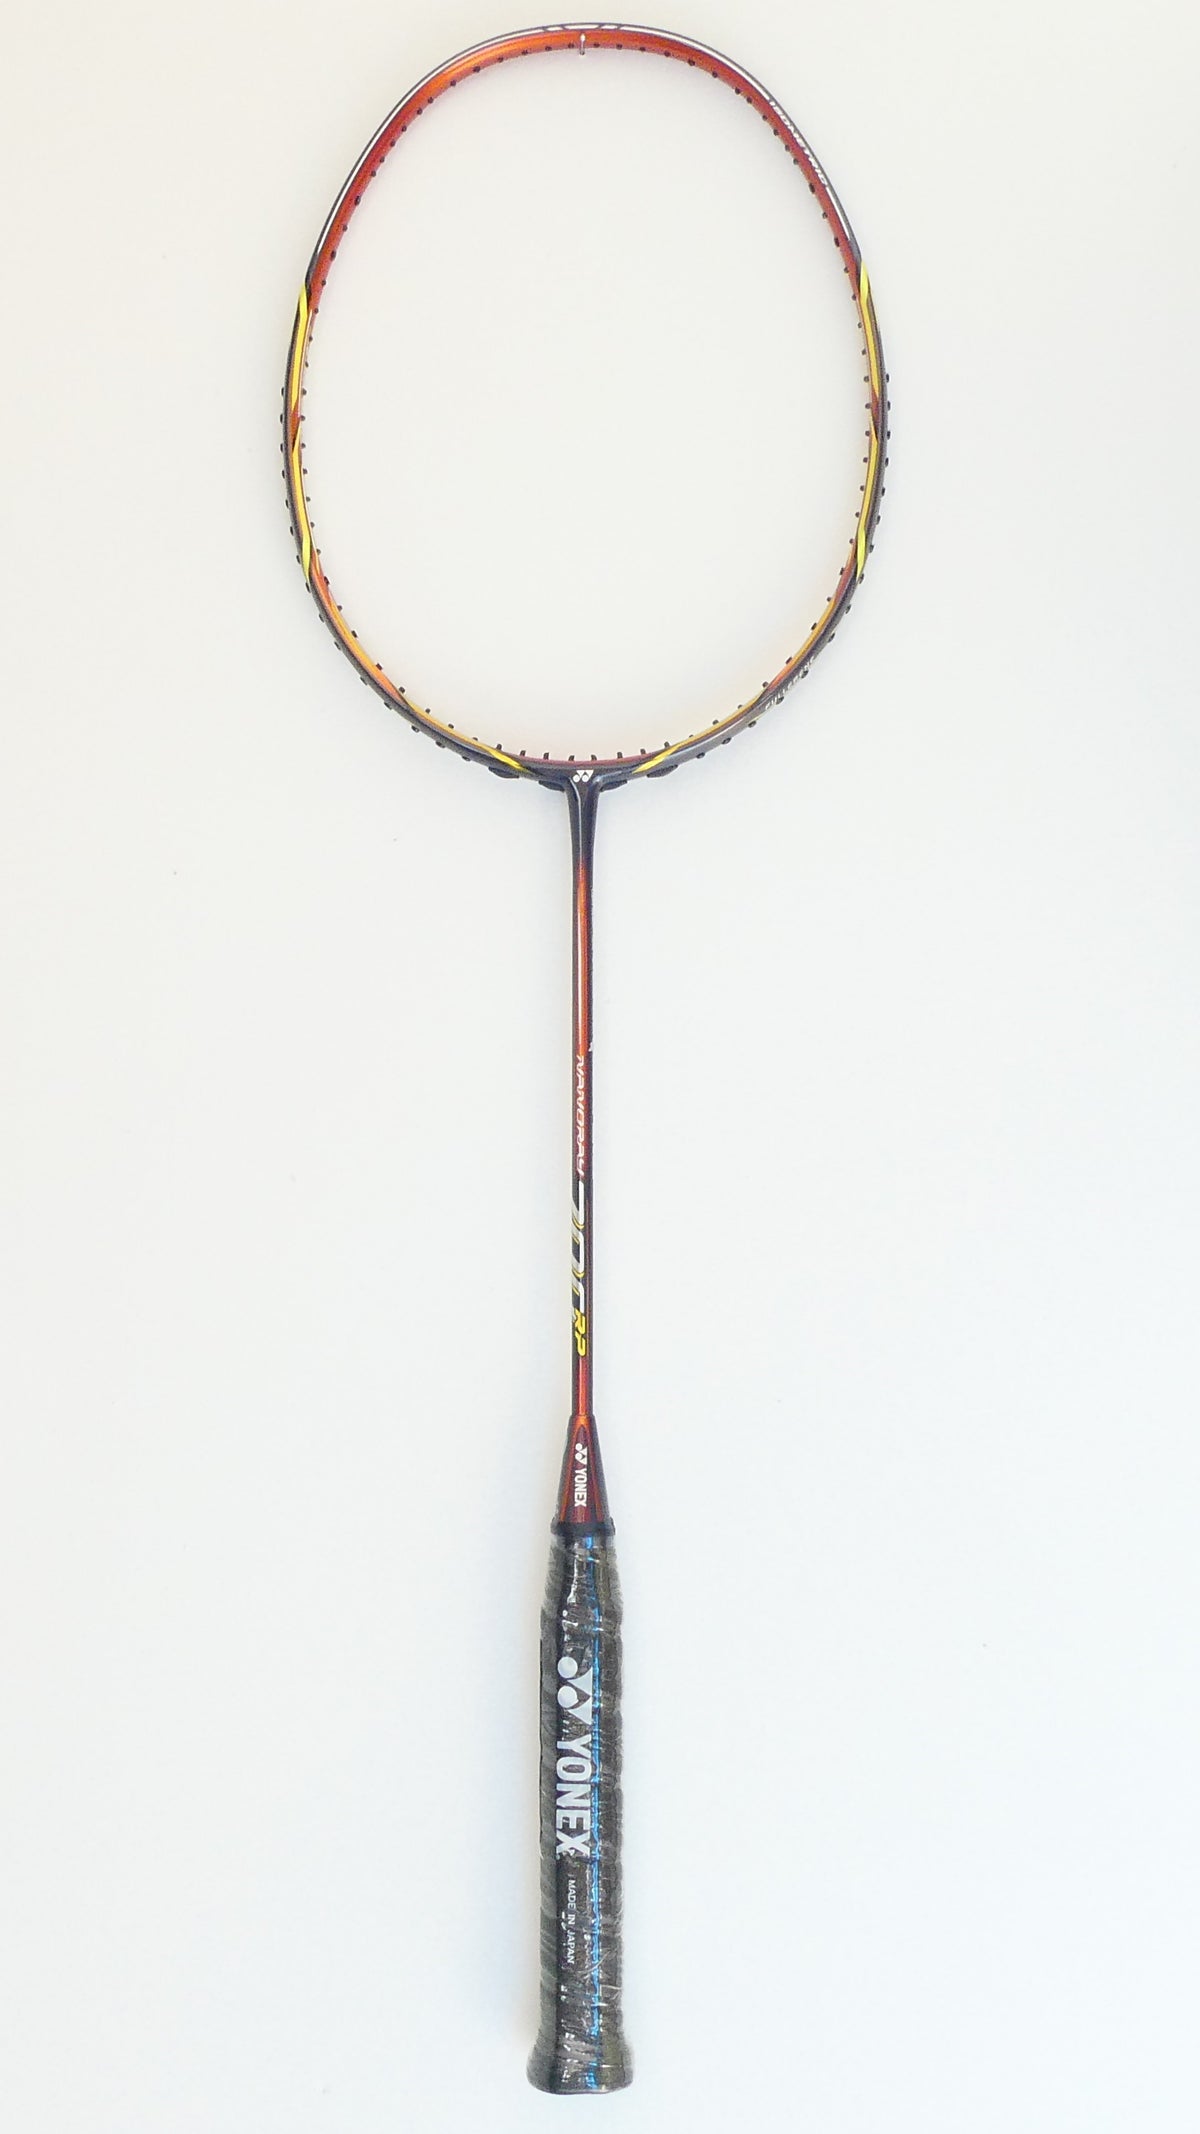 Yonex Nanoray 700RP Unstrung Badminton Racket, 4U4